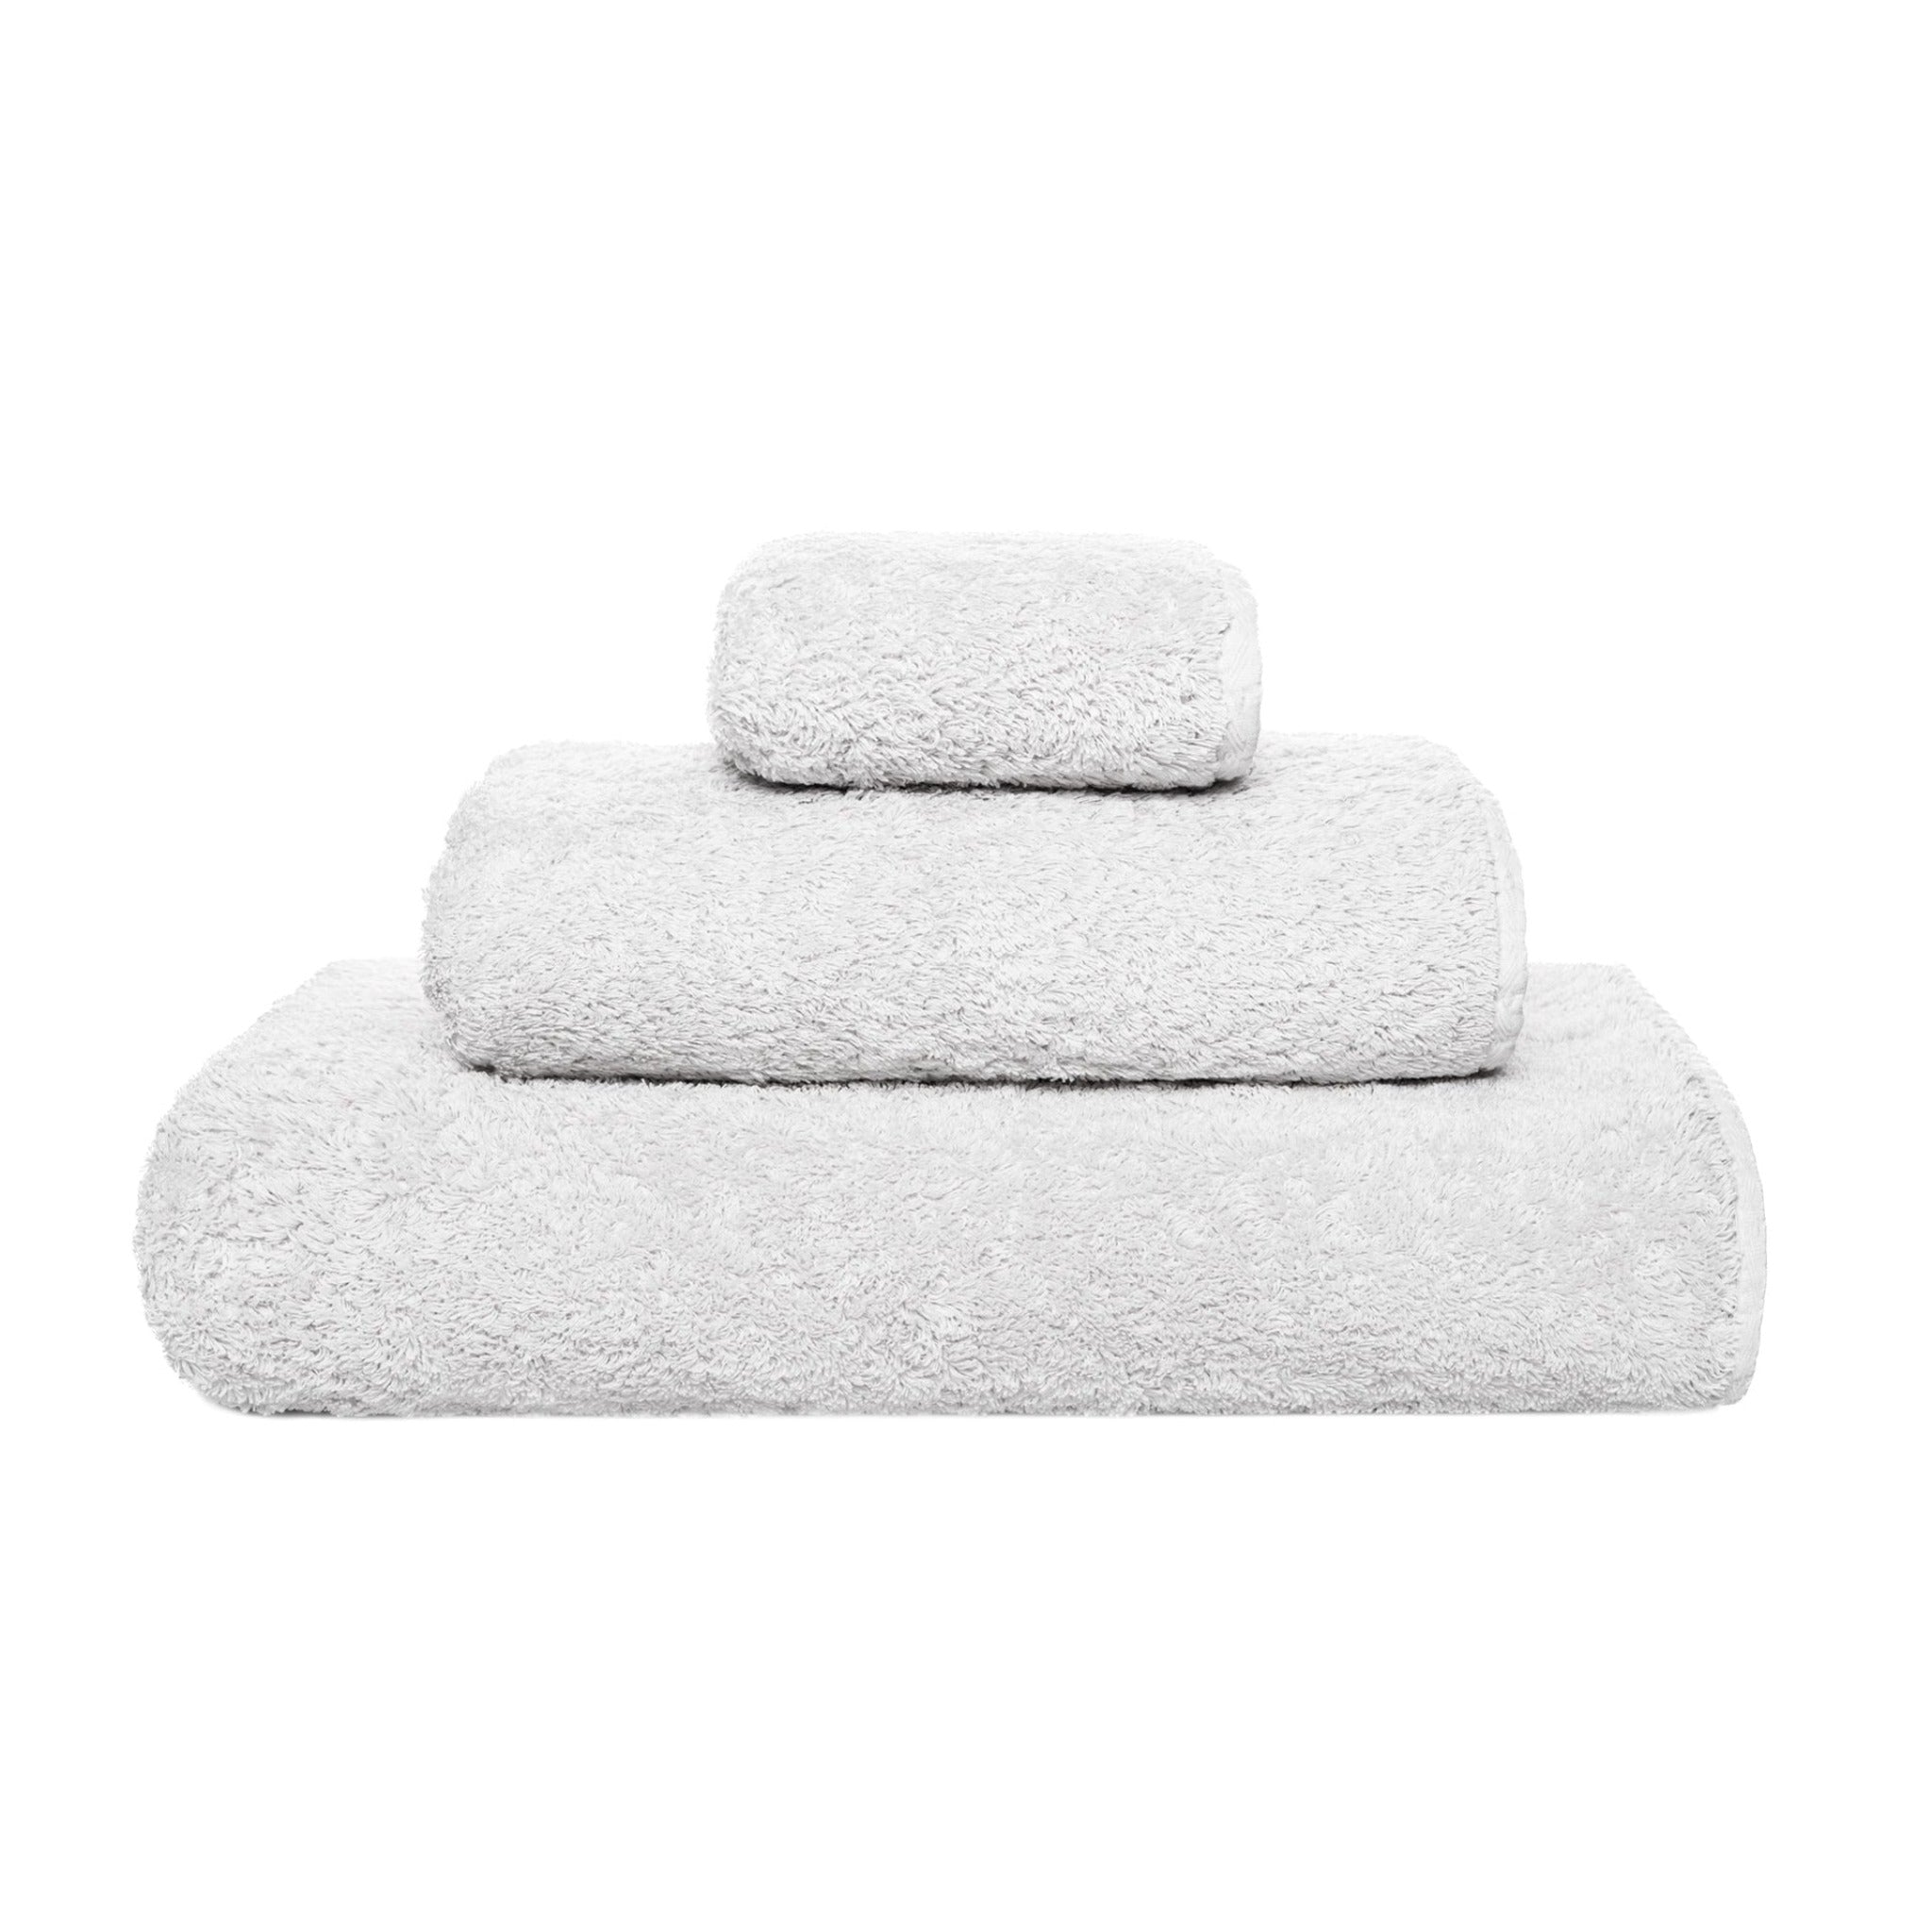 https://flandb.com/cdn/shop/products/Graccioza-Grand-Egoist-Bath-Towels-Cloud.jpg?v=1680687468